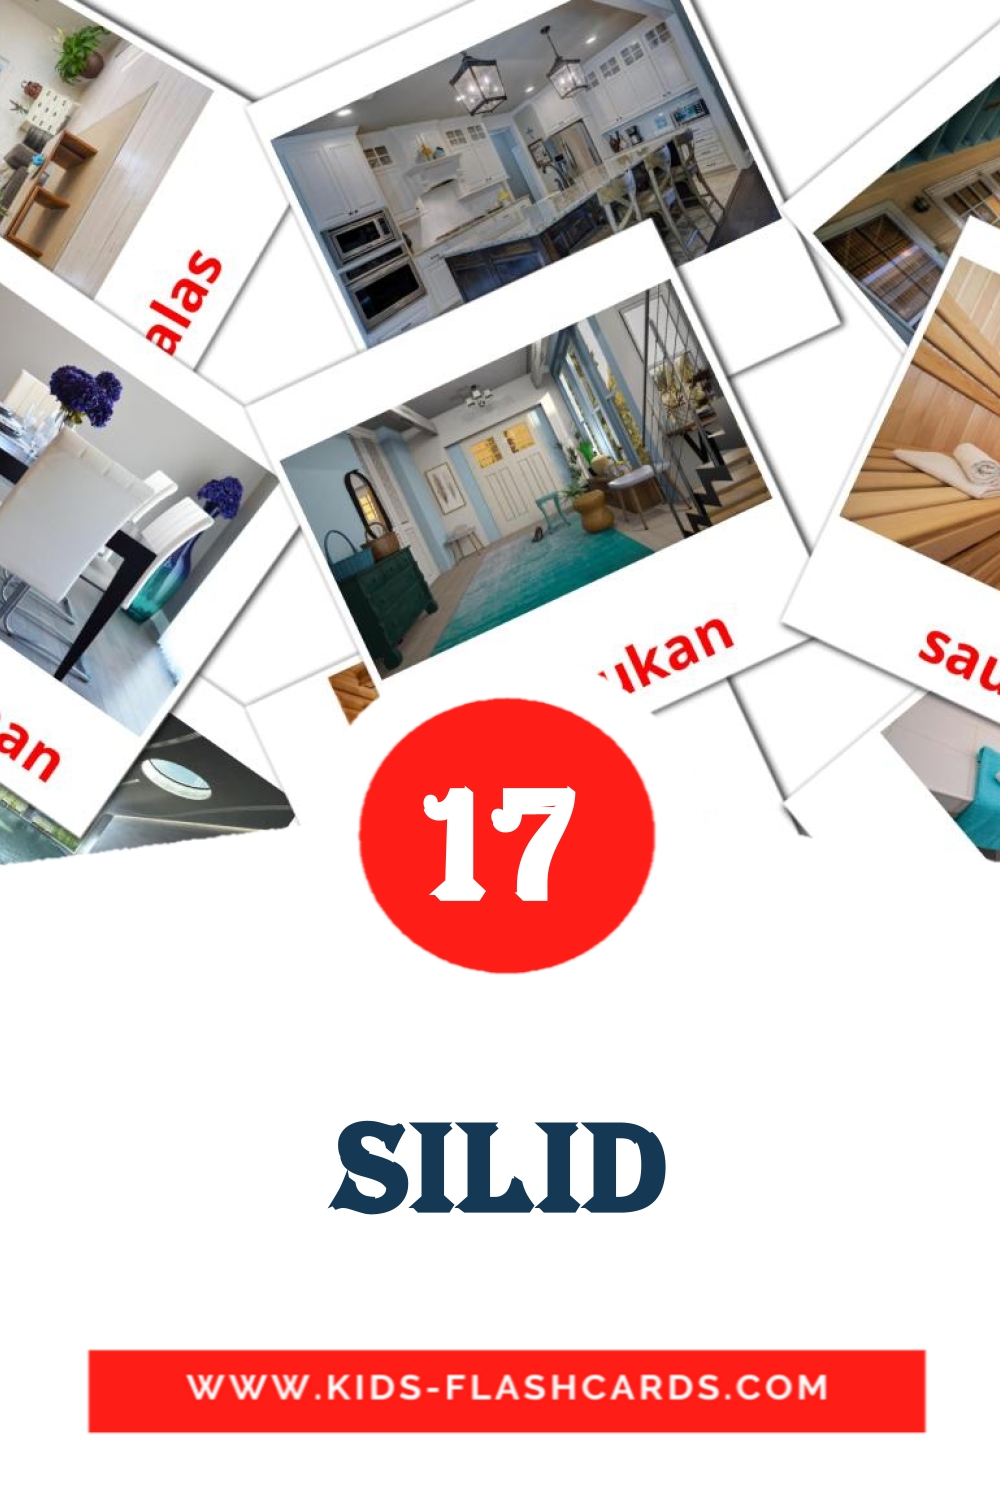 17 tarjetas didacticas de Silid para el jardín de infancia en filipino